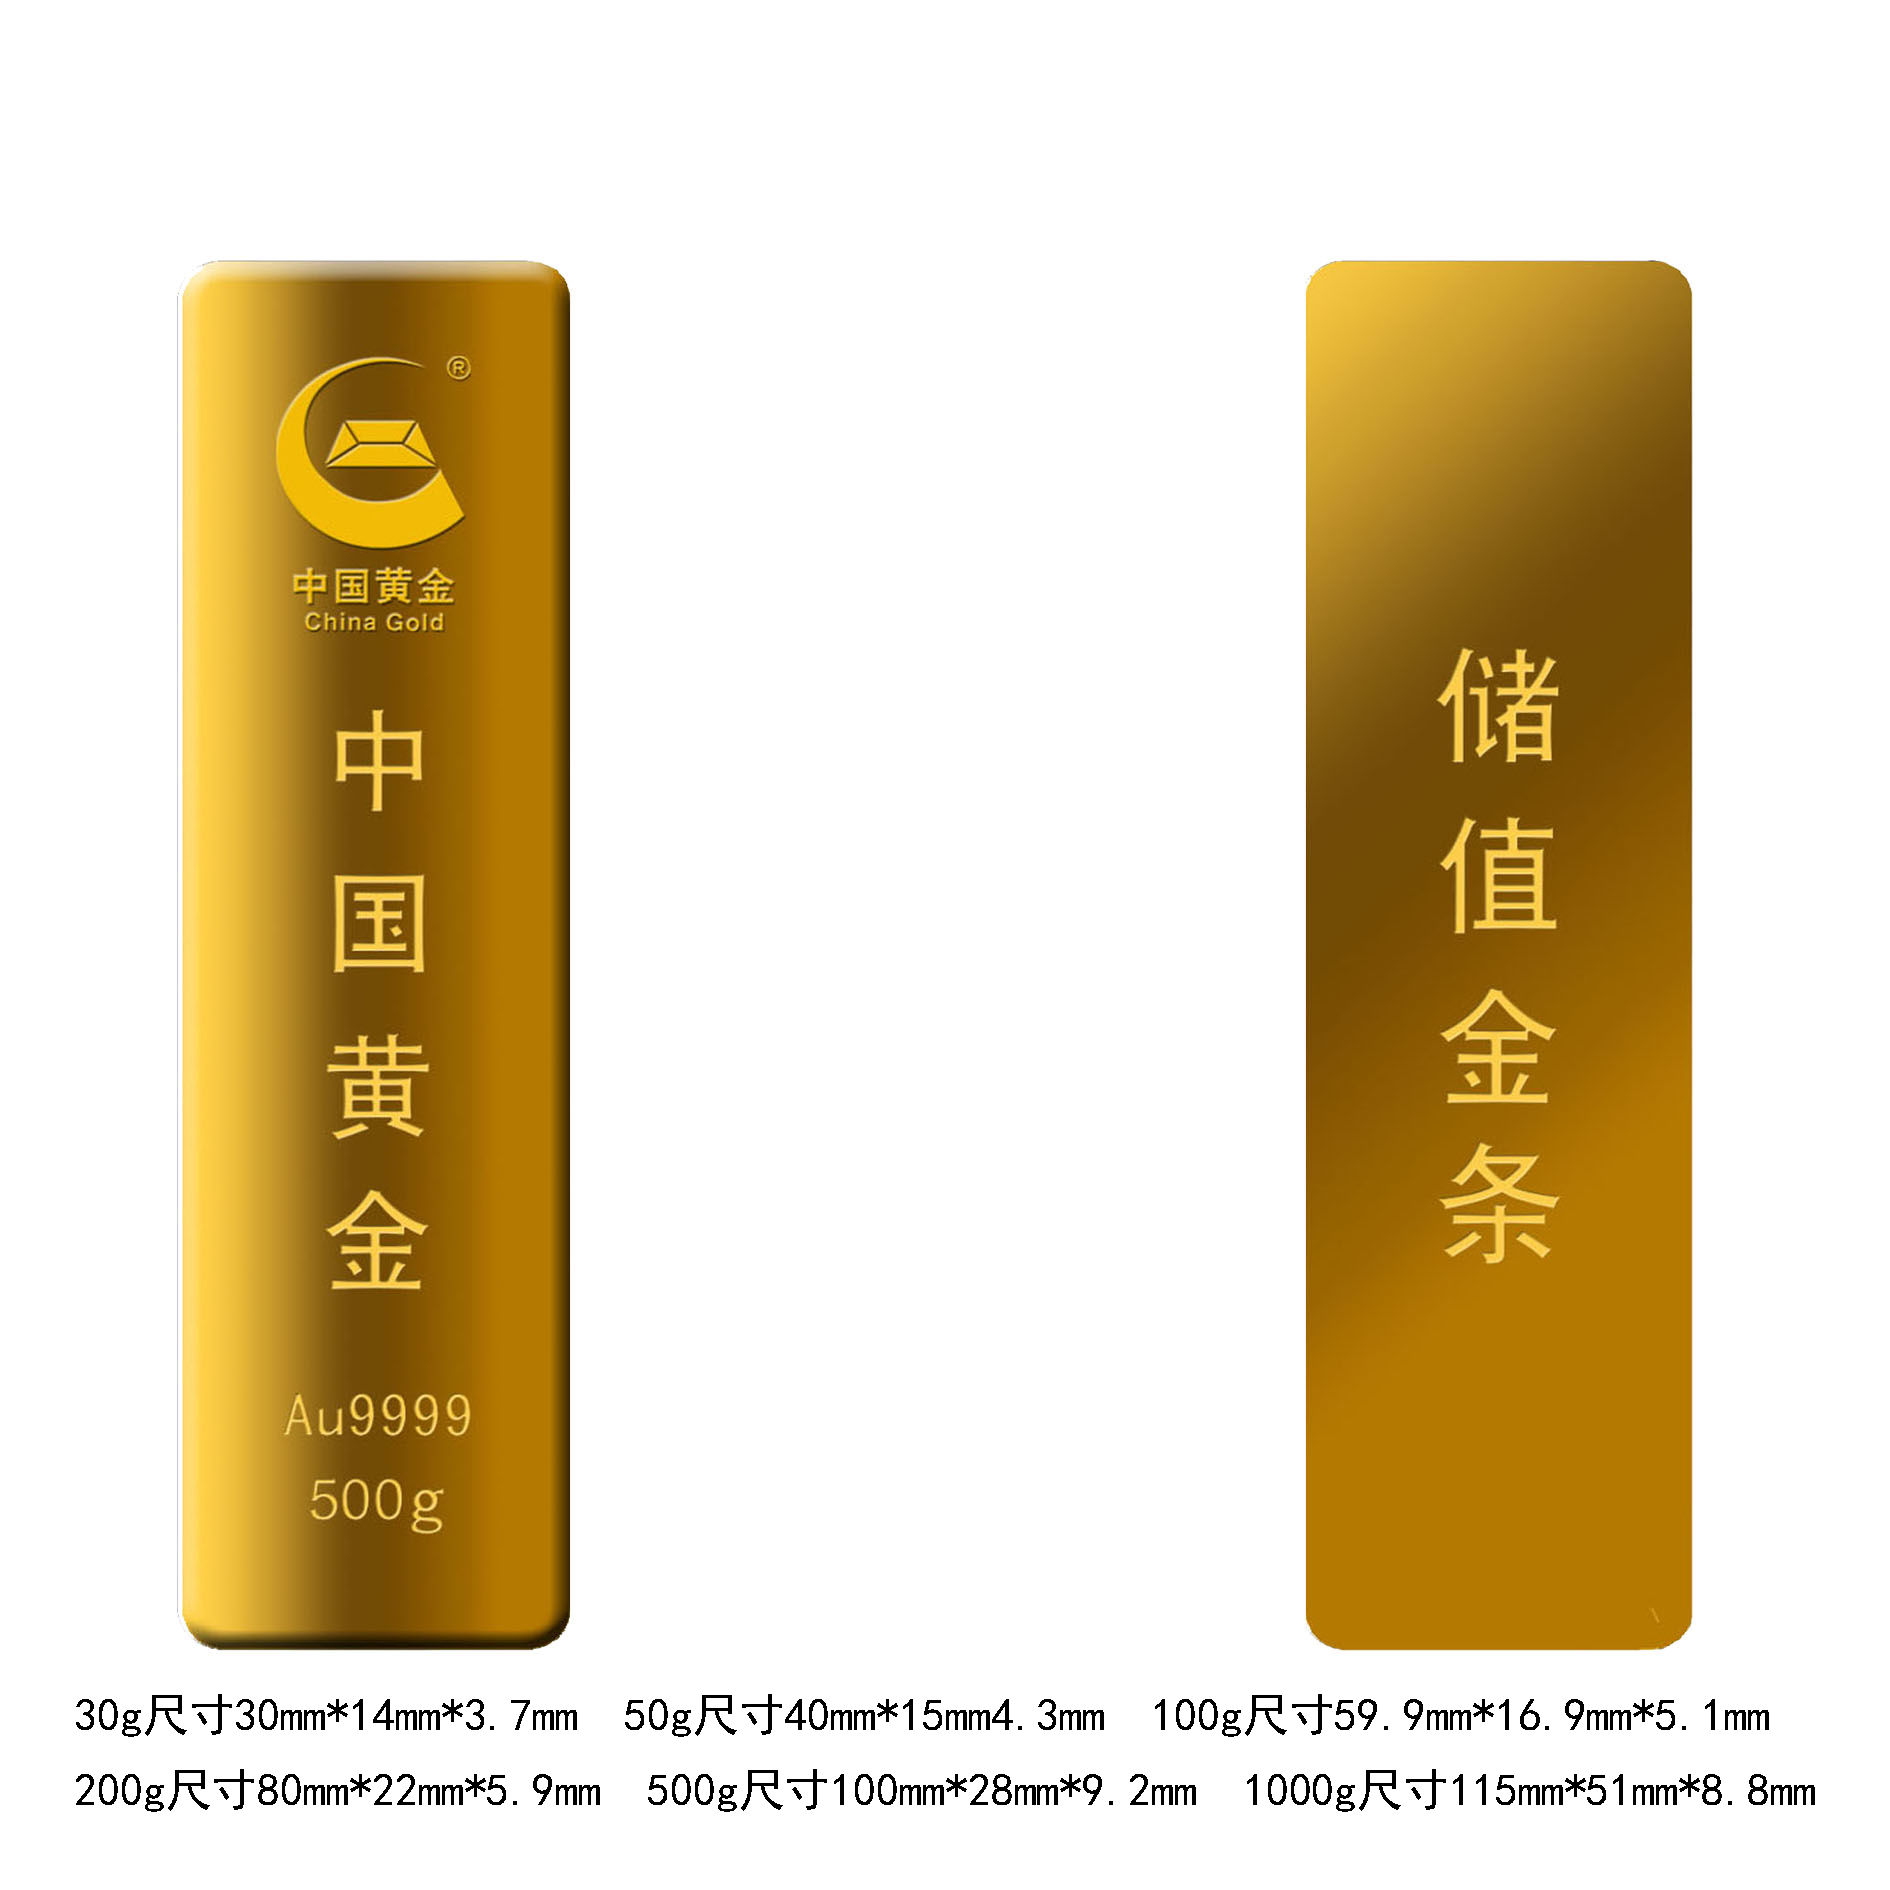 中国黄金Au9999储值金条500g - 中国黄金集团三门峡中原金银制品有限公司